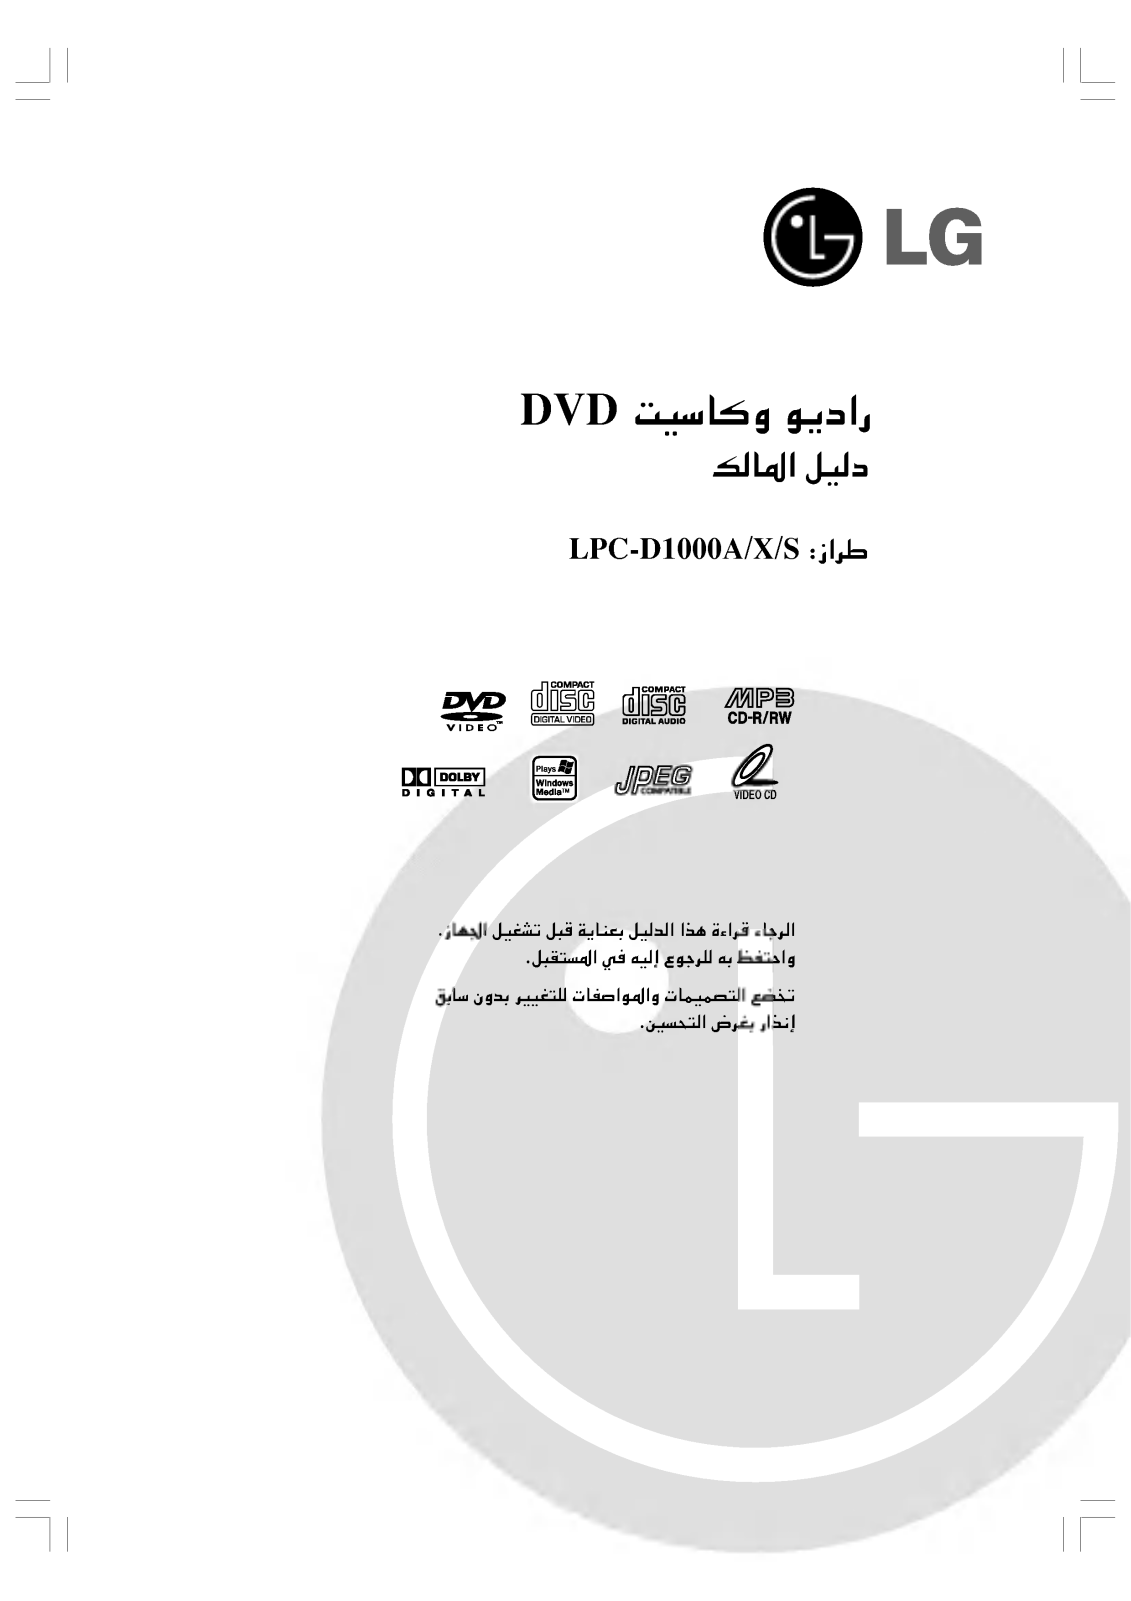 LG LPC-D1000A Owner’s Manual